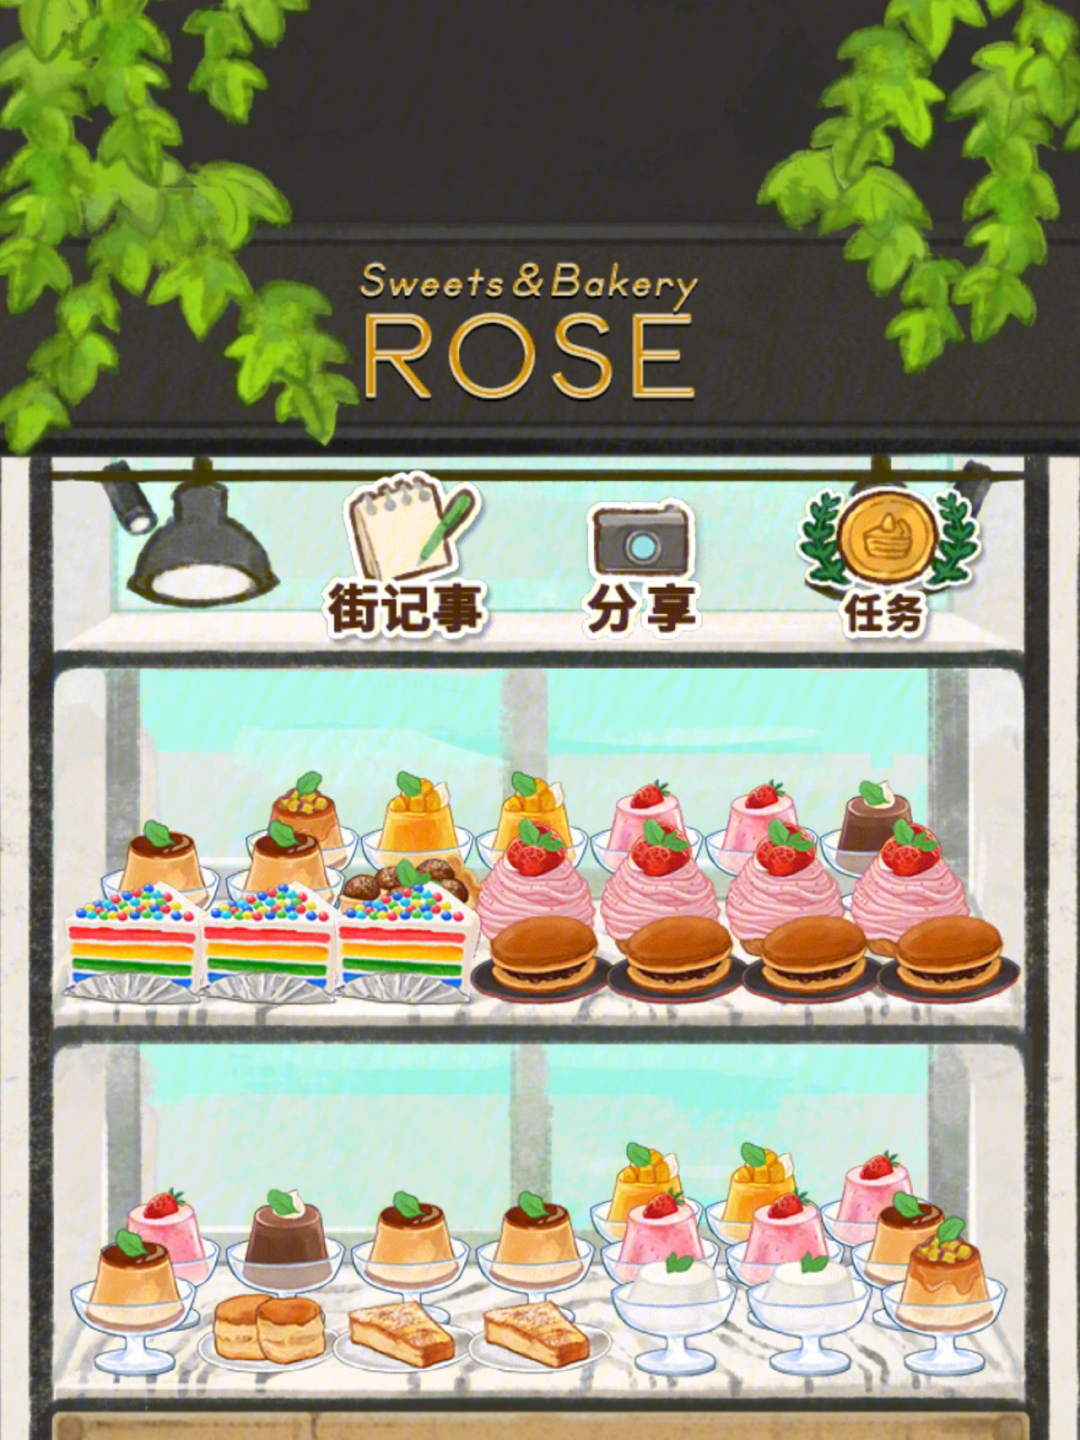 洋果子店rose2纯巧克力图片